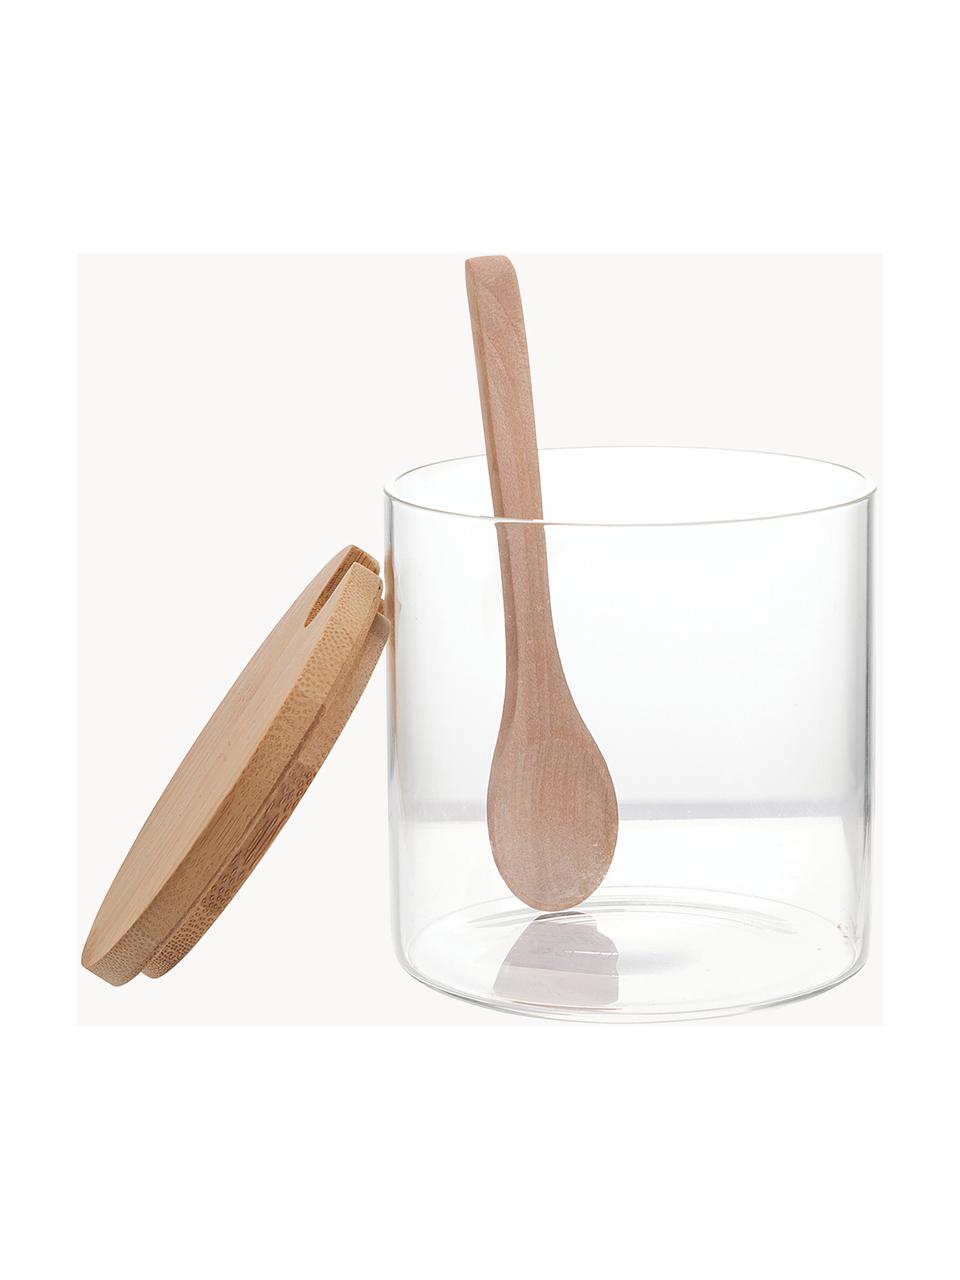 Suikerpot Len met lepel, Pot: borosilicaatglas, Transparant, helder hout, Ø 10 x H 10 cm